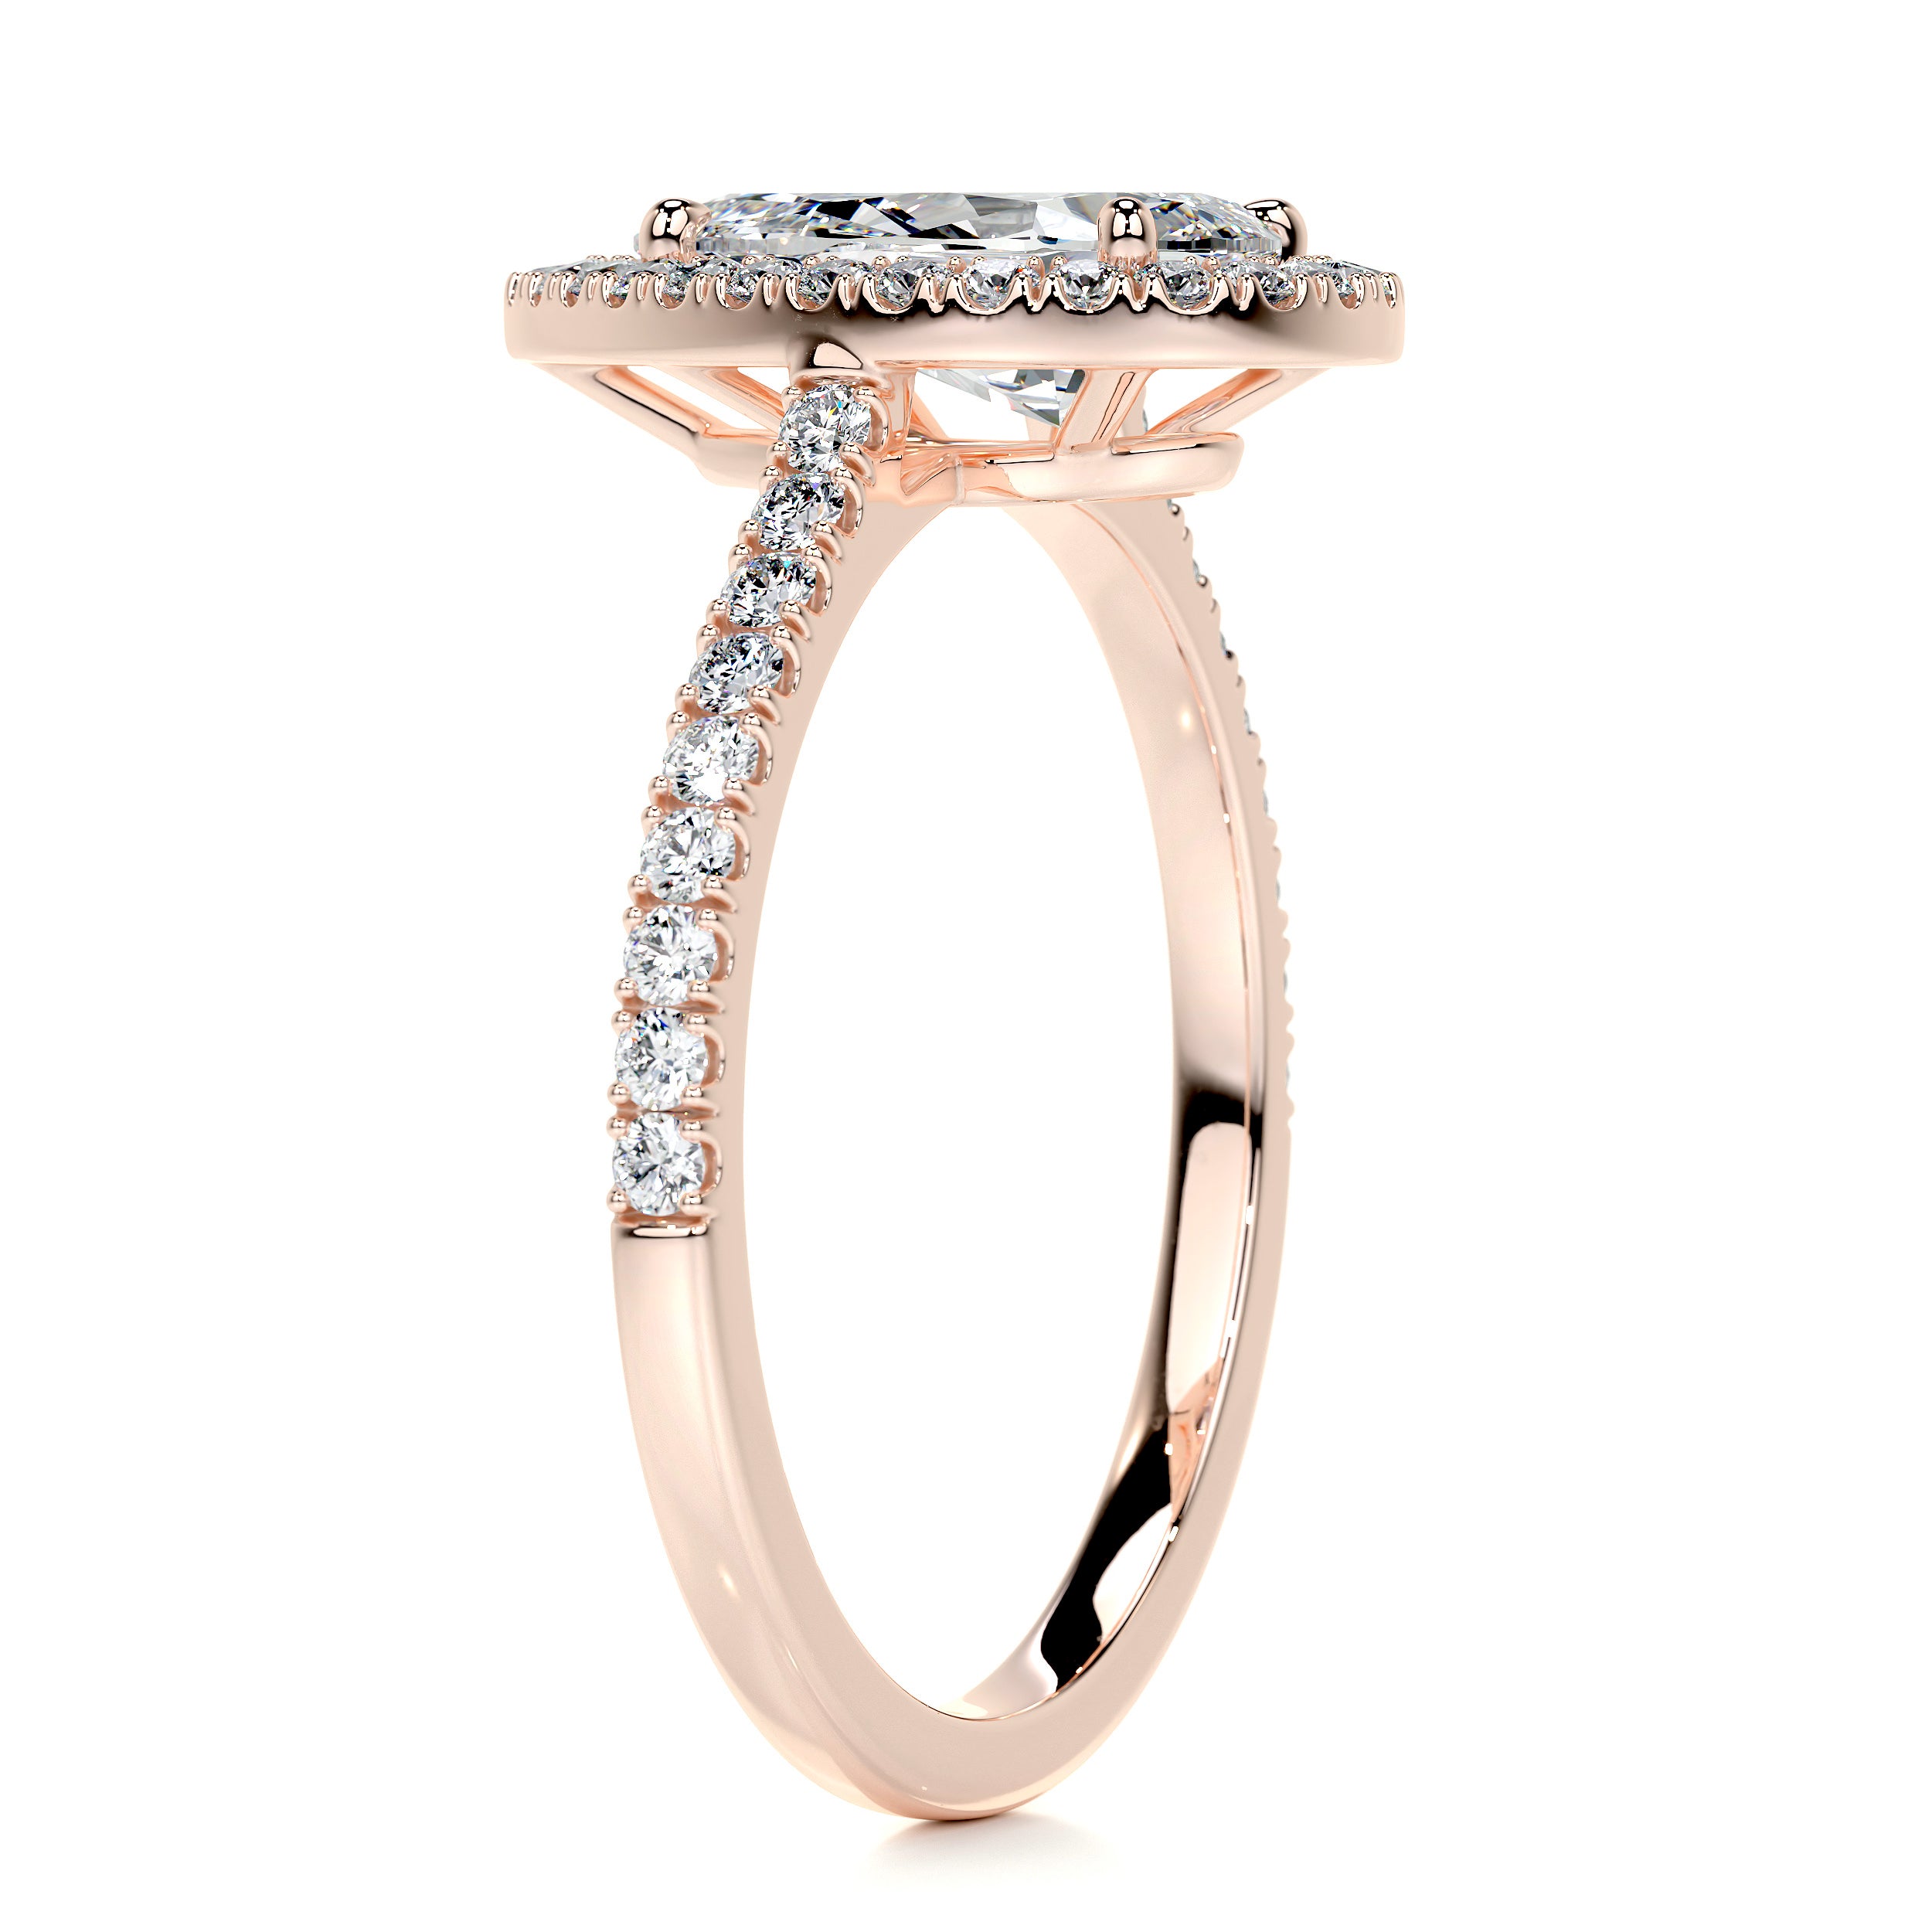 Sophia Diamond Engagement Ring -14K Rose Gold